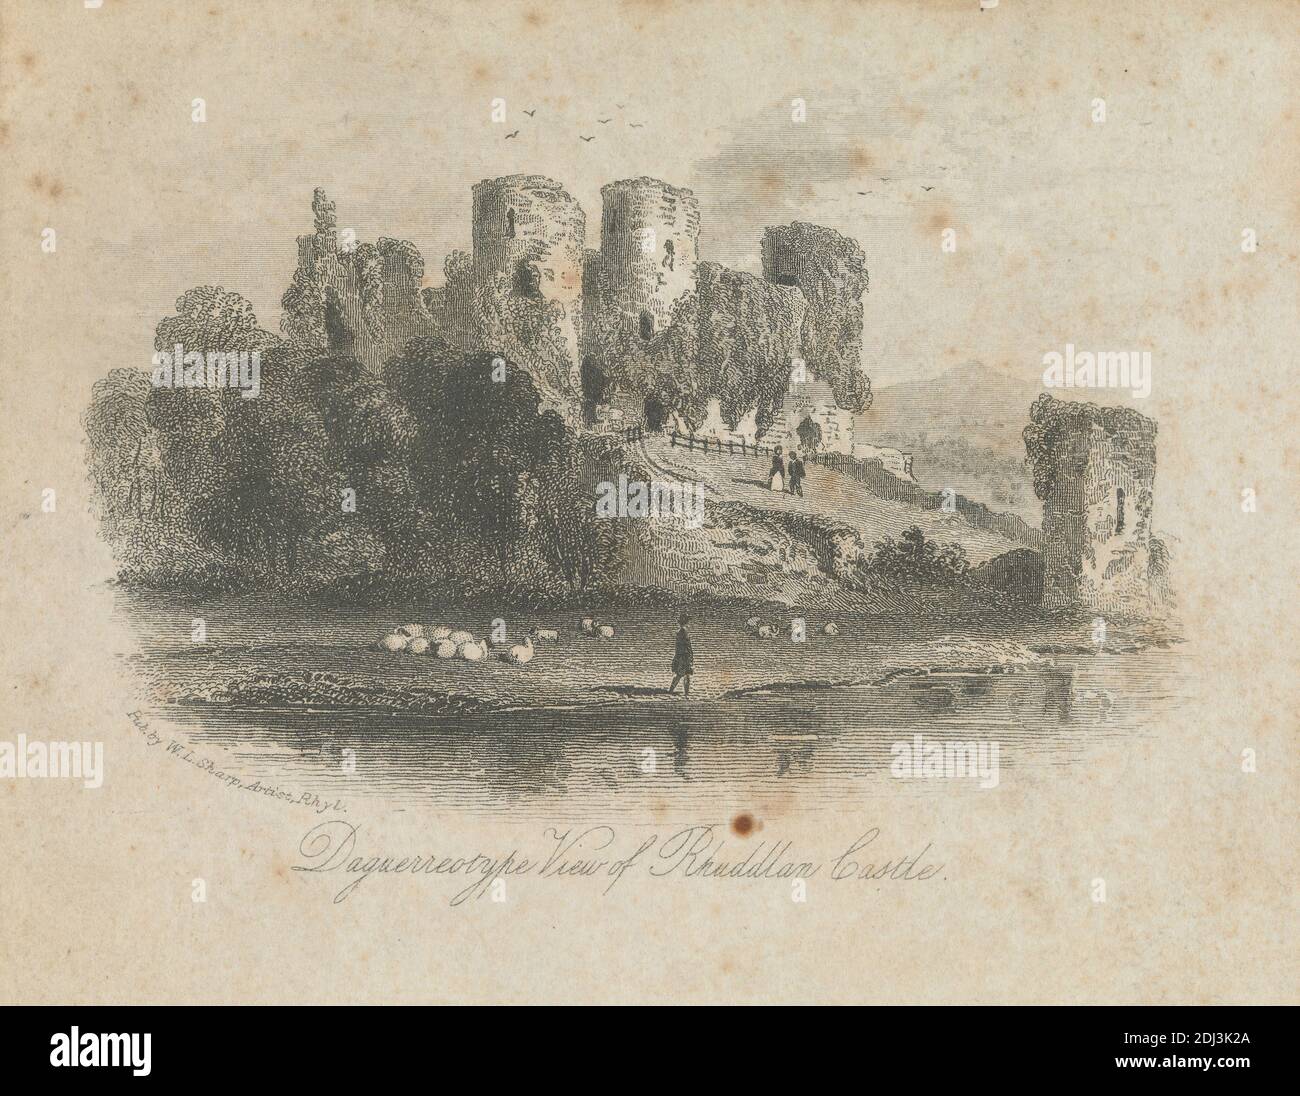 Daguerréotype vue du château de Rhuddlan, artiste inconnu, ( W. L. Sharp ), entre 1850 et 1860, gravure en lignes et gravure sur papier fin, légèrement texturé, à feuilles de 4 1/4 × 5 pouces (10.8 × 12.7 cm) et image : 2 3/4 × 4 1/8 pouces (7 × 10.5 cm), sujet architectural Banque D'Images